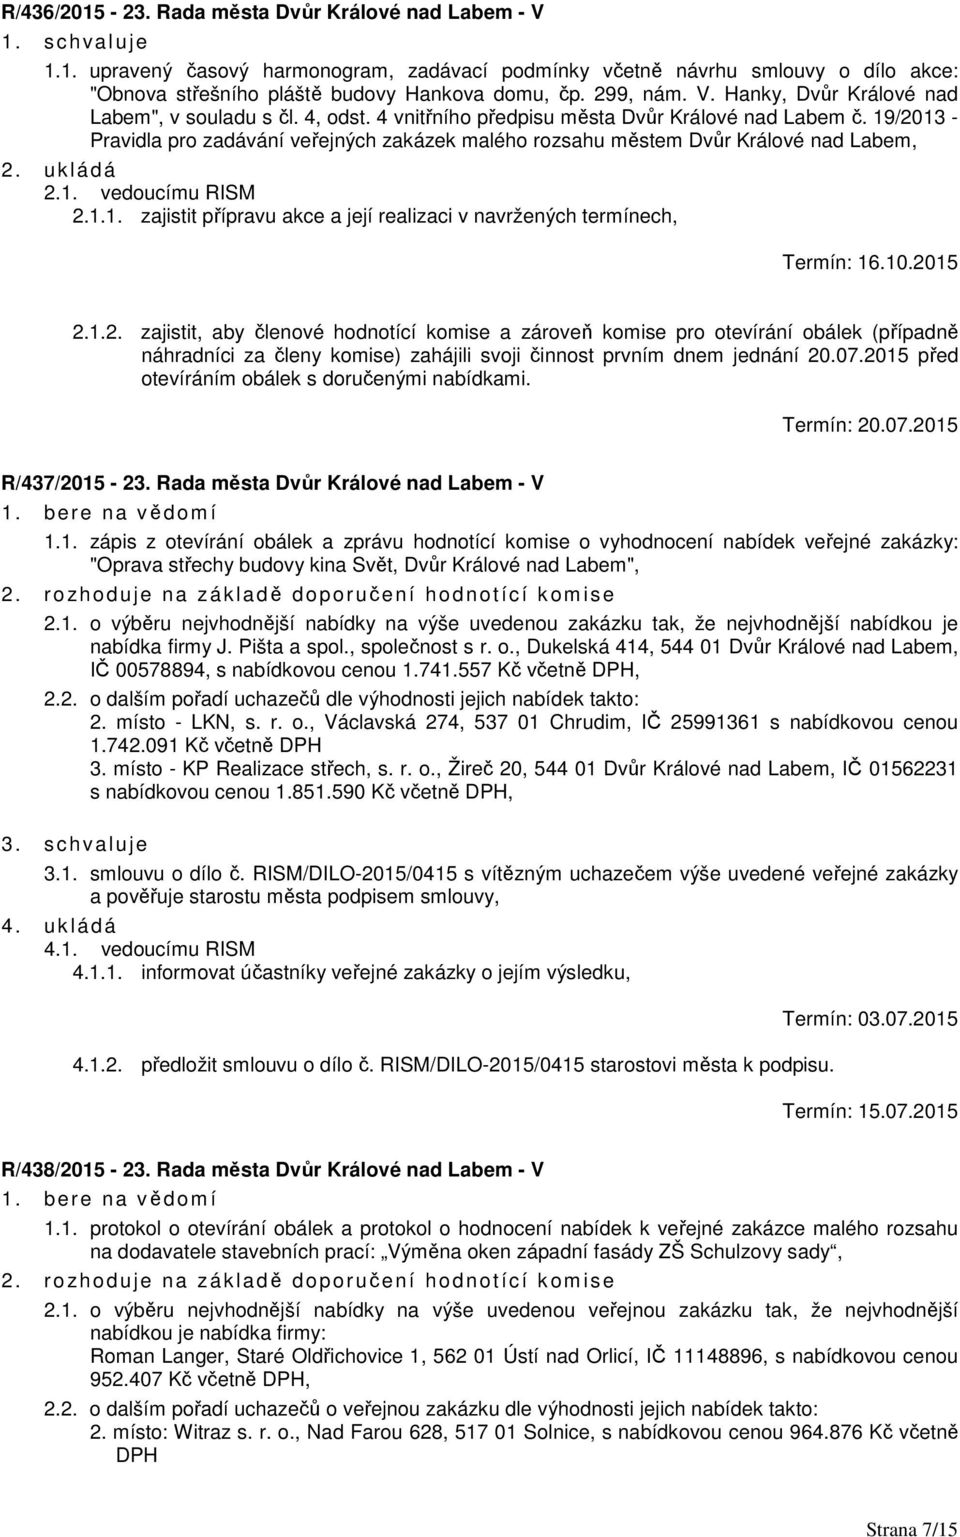 19/2013 - Pravidla pro zadávání veřejných zakázek malého rozsahu městem Dvůr Králové nad Labem, 2.1. vedoucímu RISM 2.1.1. zajistit přípravu akce a její realizaci v navržených termínech, Termín: 16.